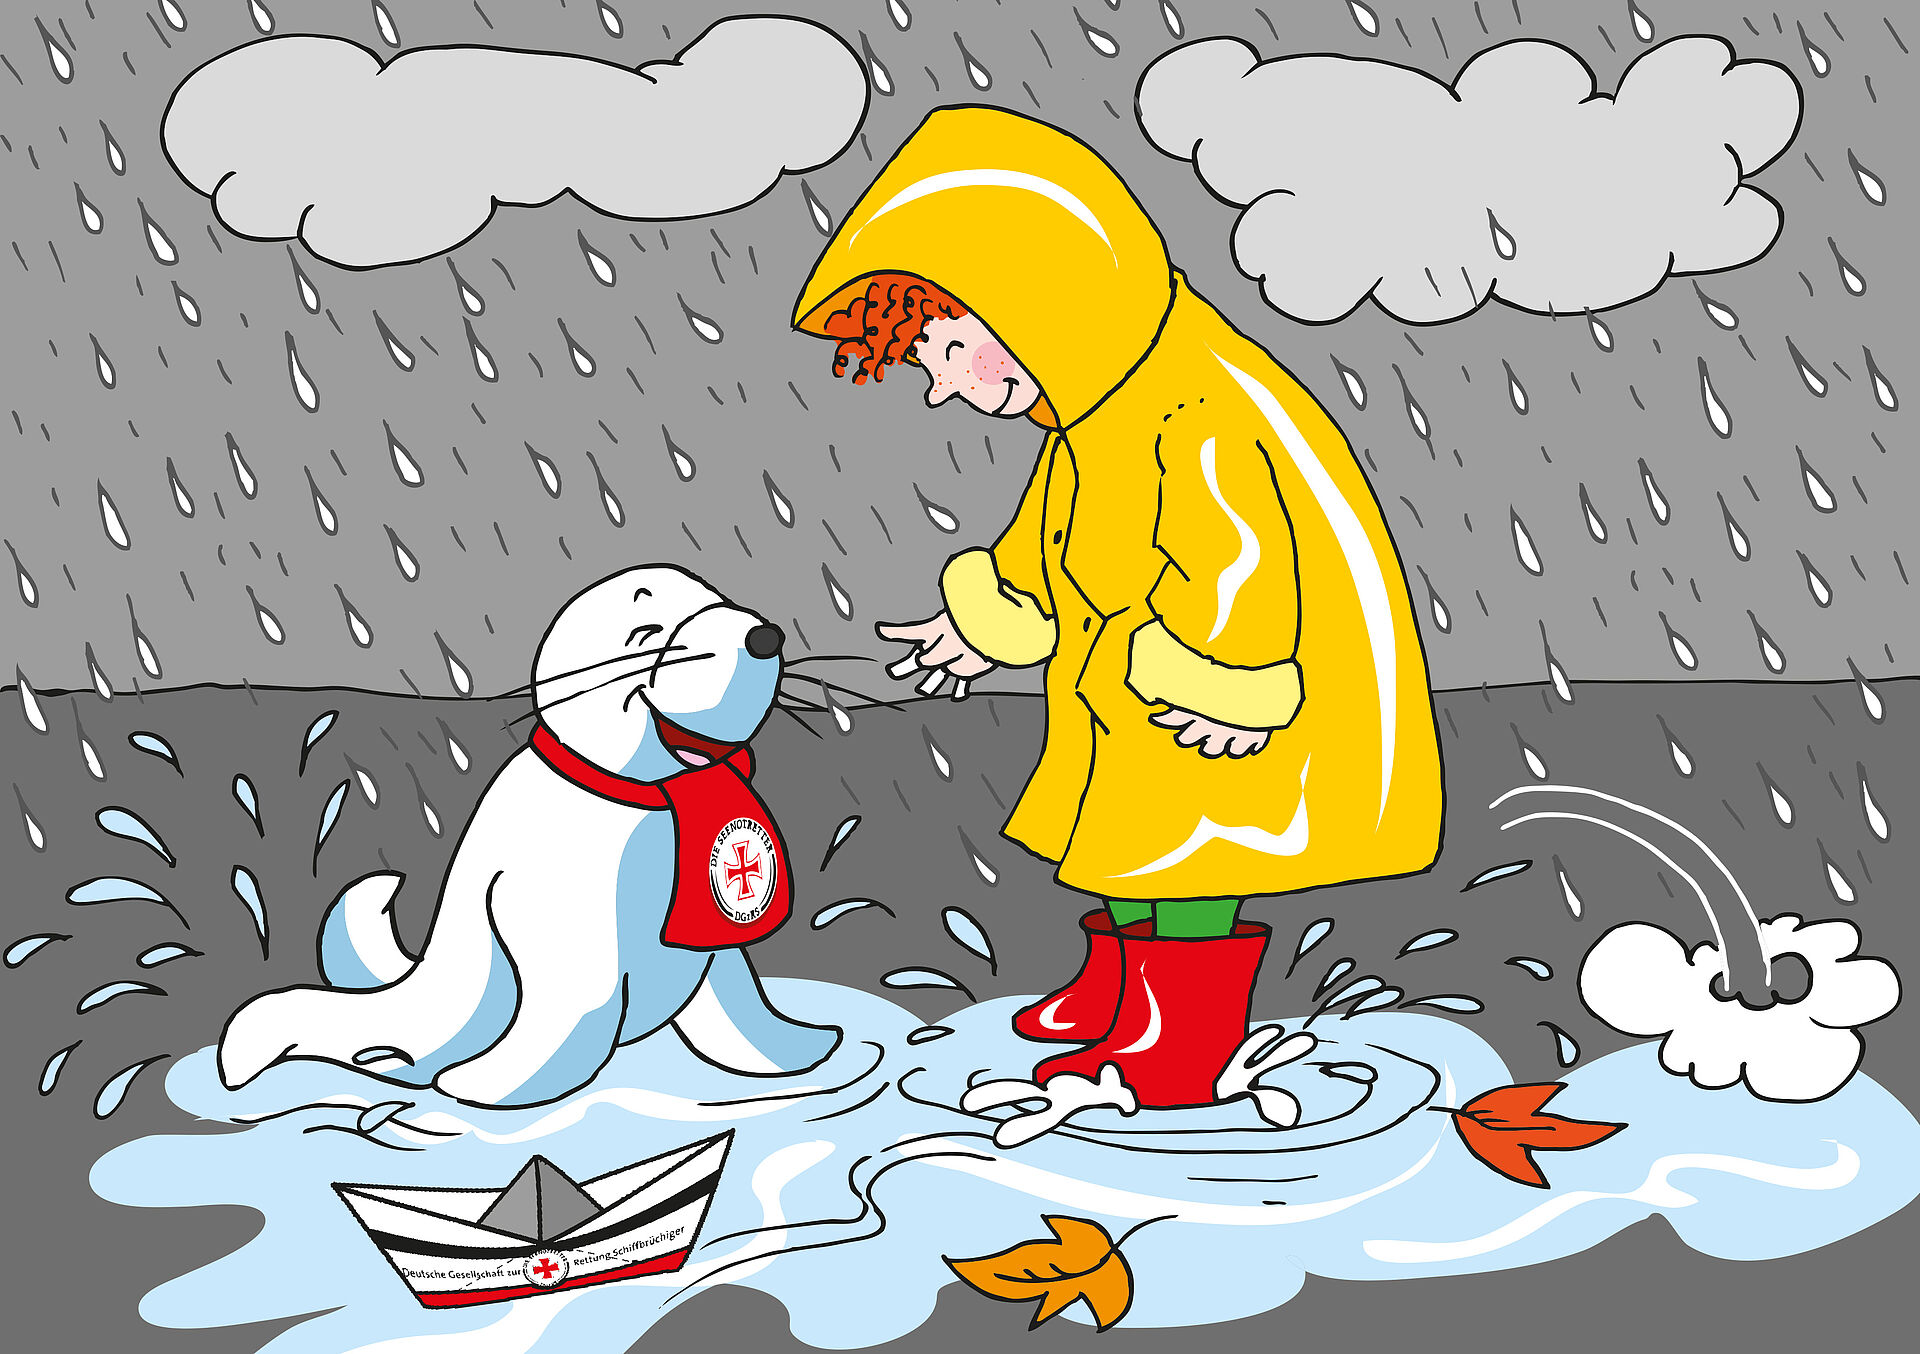 Abbildung von einer weißen Robbe und einem kleinen Jungen im gelben Regenmantel